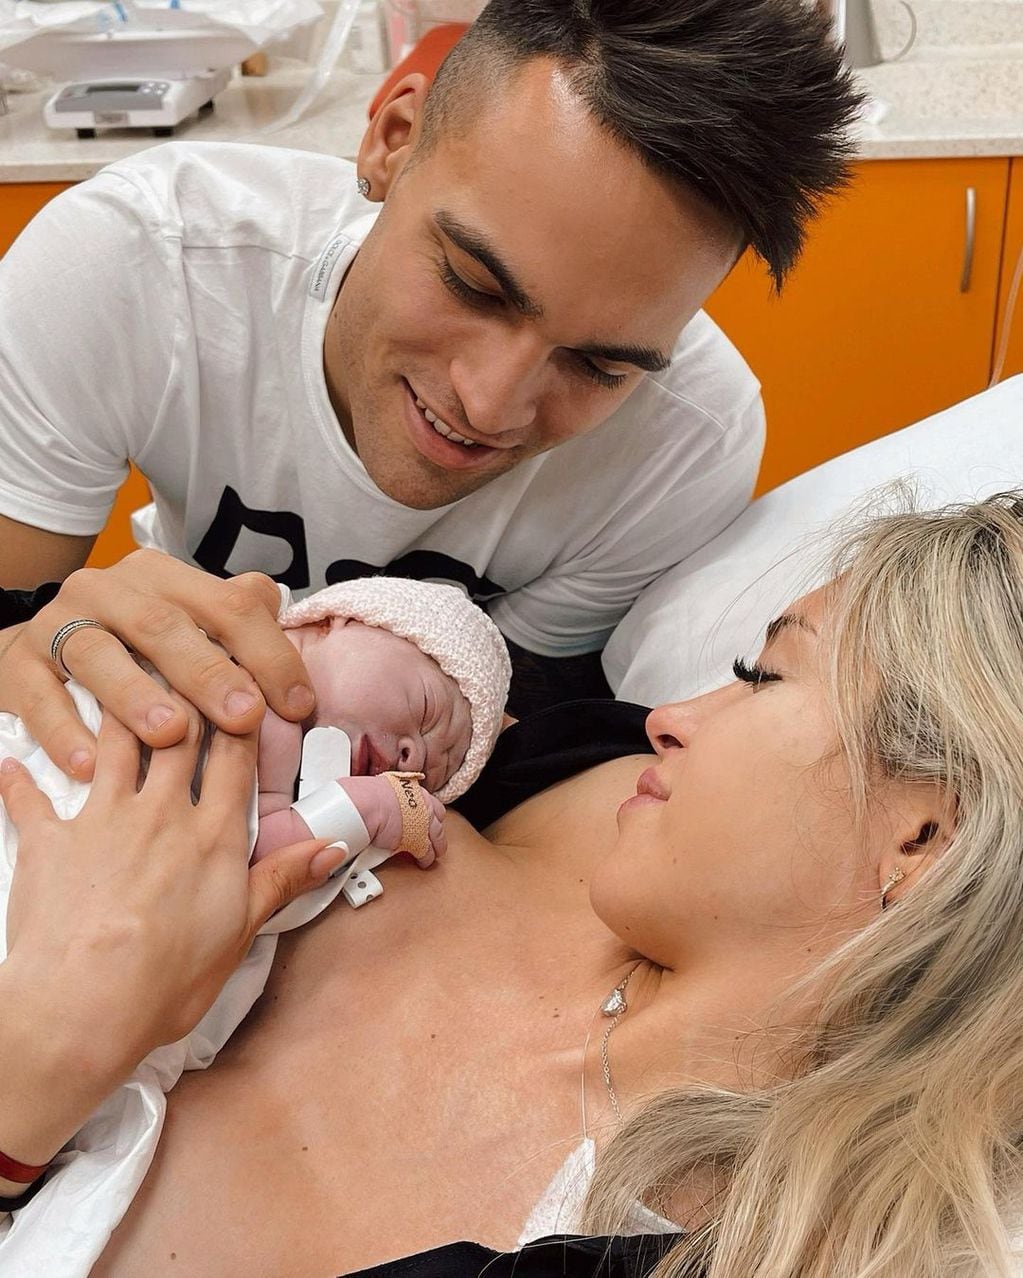 La primera foto de Nina junto a sus padres, el futbolista Lautaro Martínez y la modelo mendocina, Agustina Gandolfo.